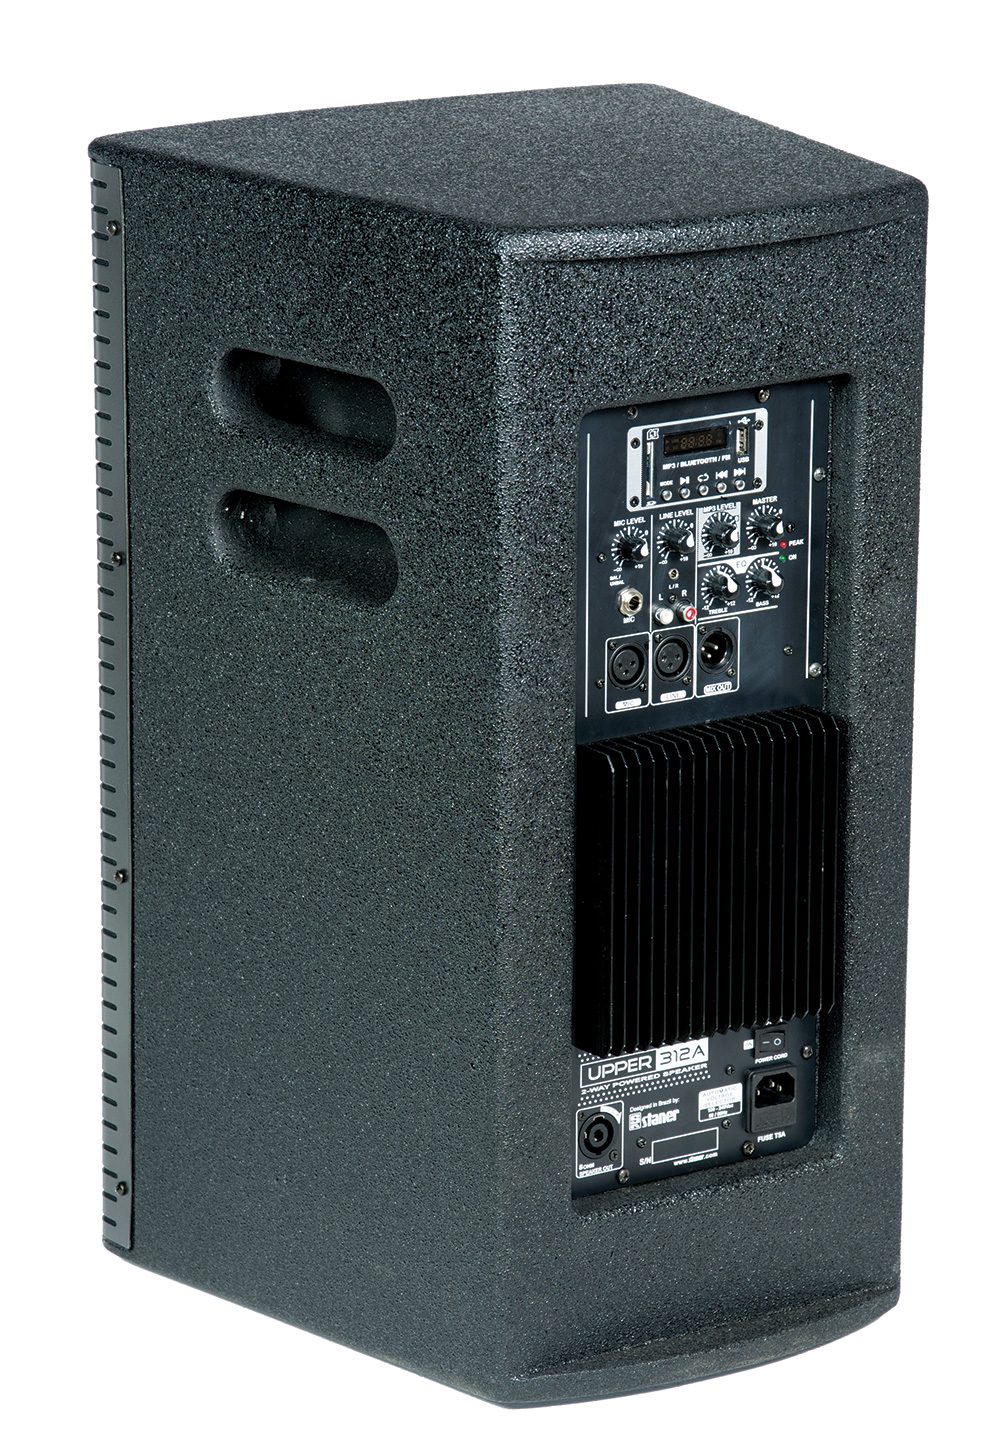 Caixa Ativa Staner Upper 312A C/ USB 38628